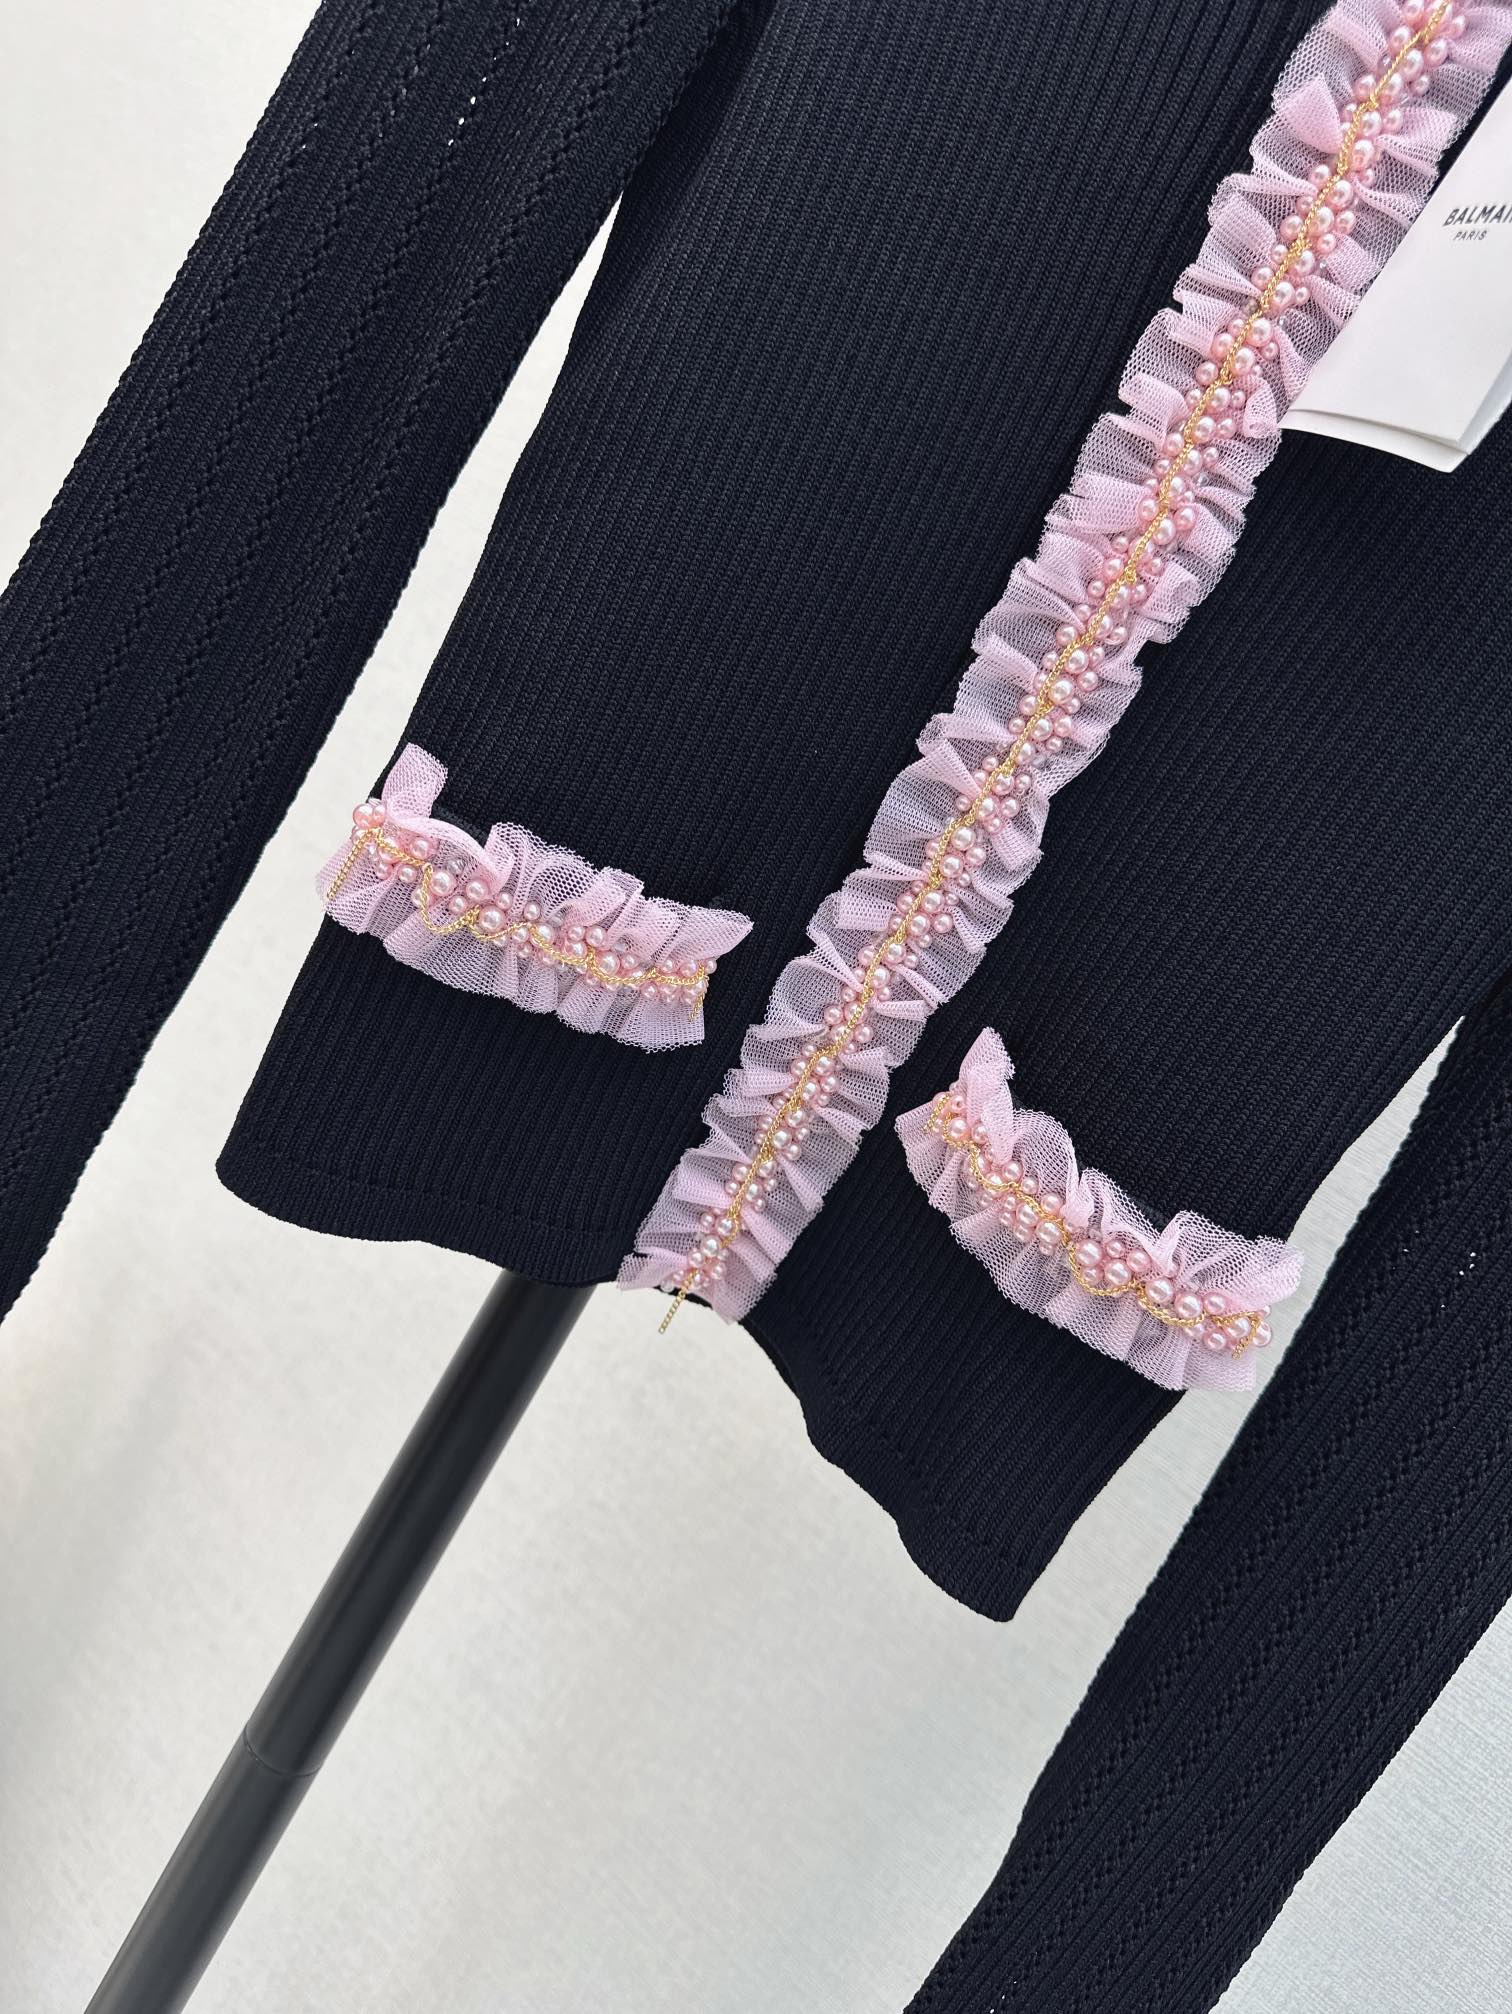 独家首发Bal24Ss春夏最新款花边钉珠针织开衫短款开衫设计非常修饰身材比例手工编织蕾丝珍珠装饰超显质感